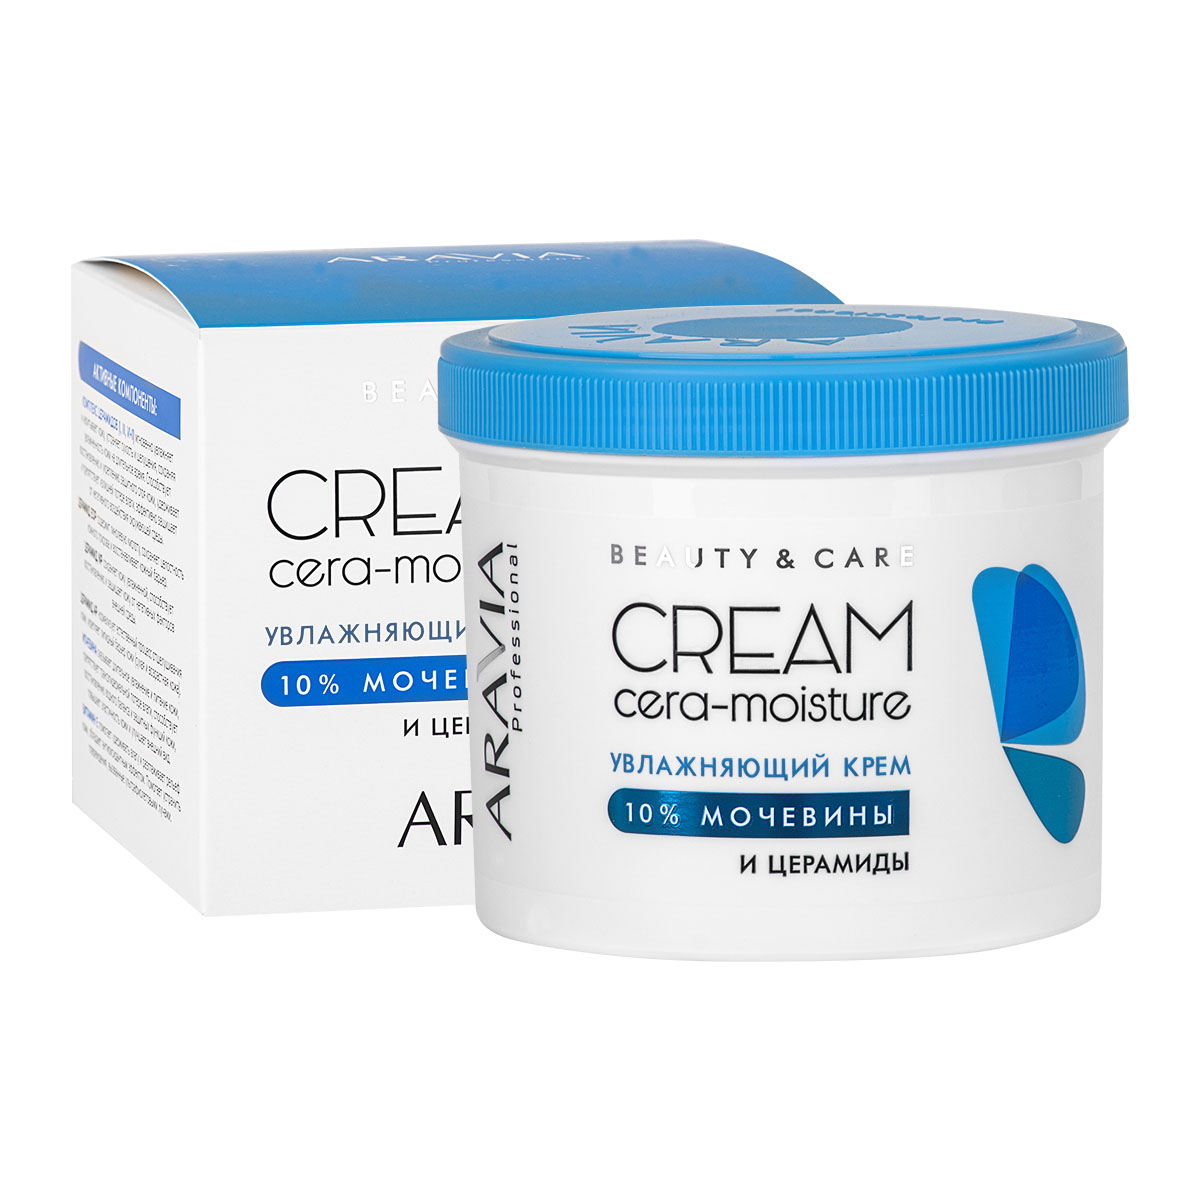 Купить Aravia Professional Увлажняющий крем с церамидами и мочевиной (10%) Cera-Moisture Cream, 550 мл (Aravia Professional, SPA маникюр), Россия